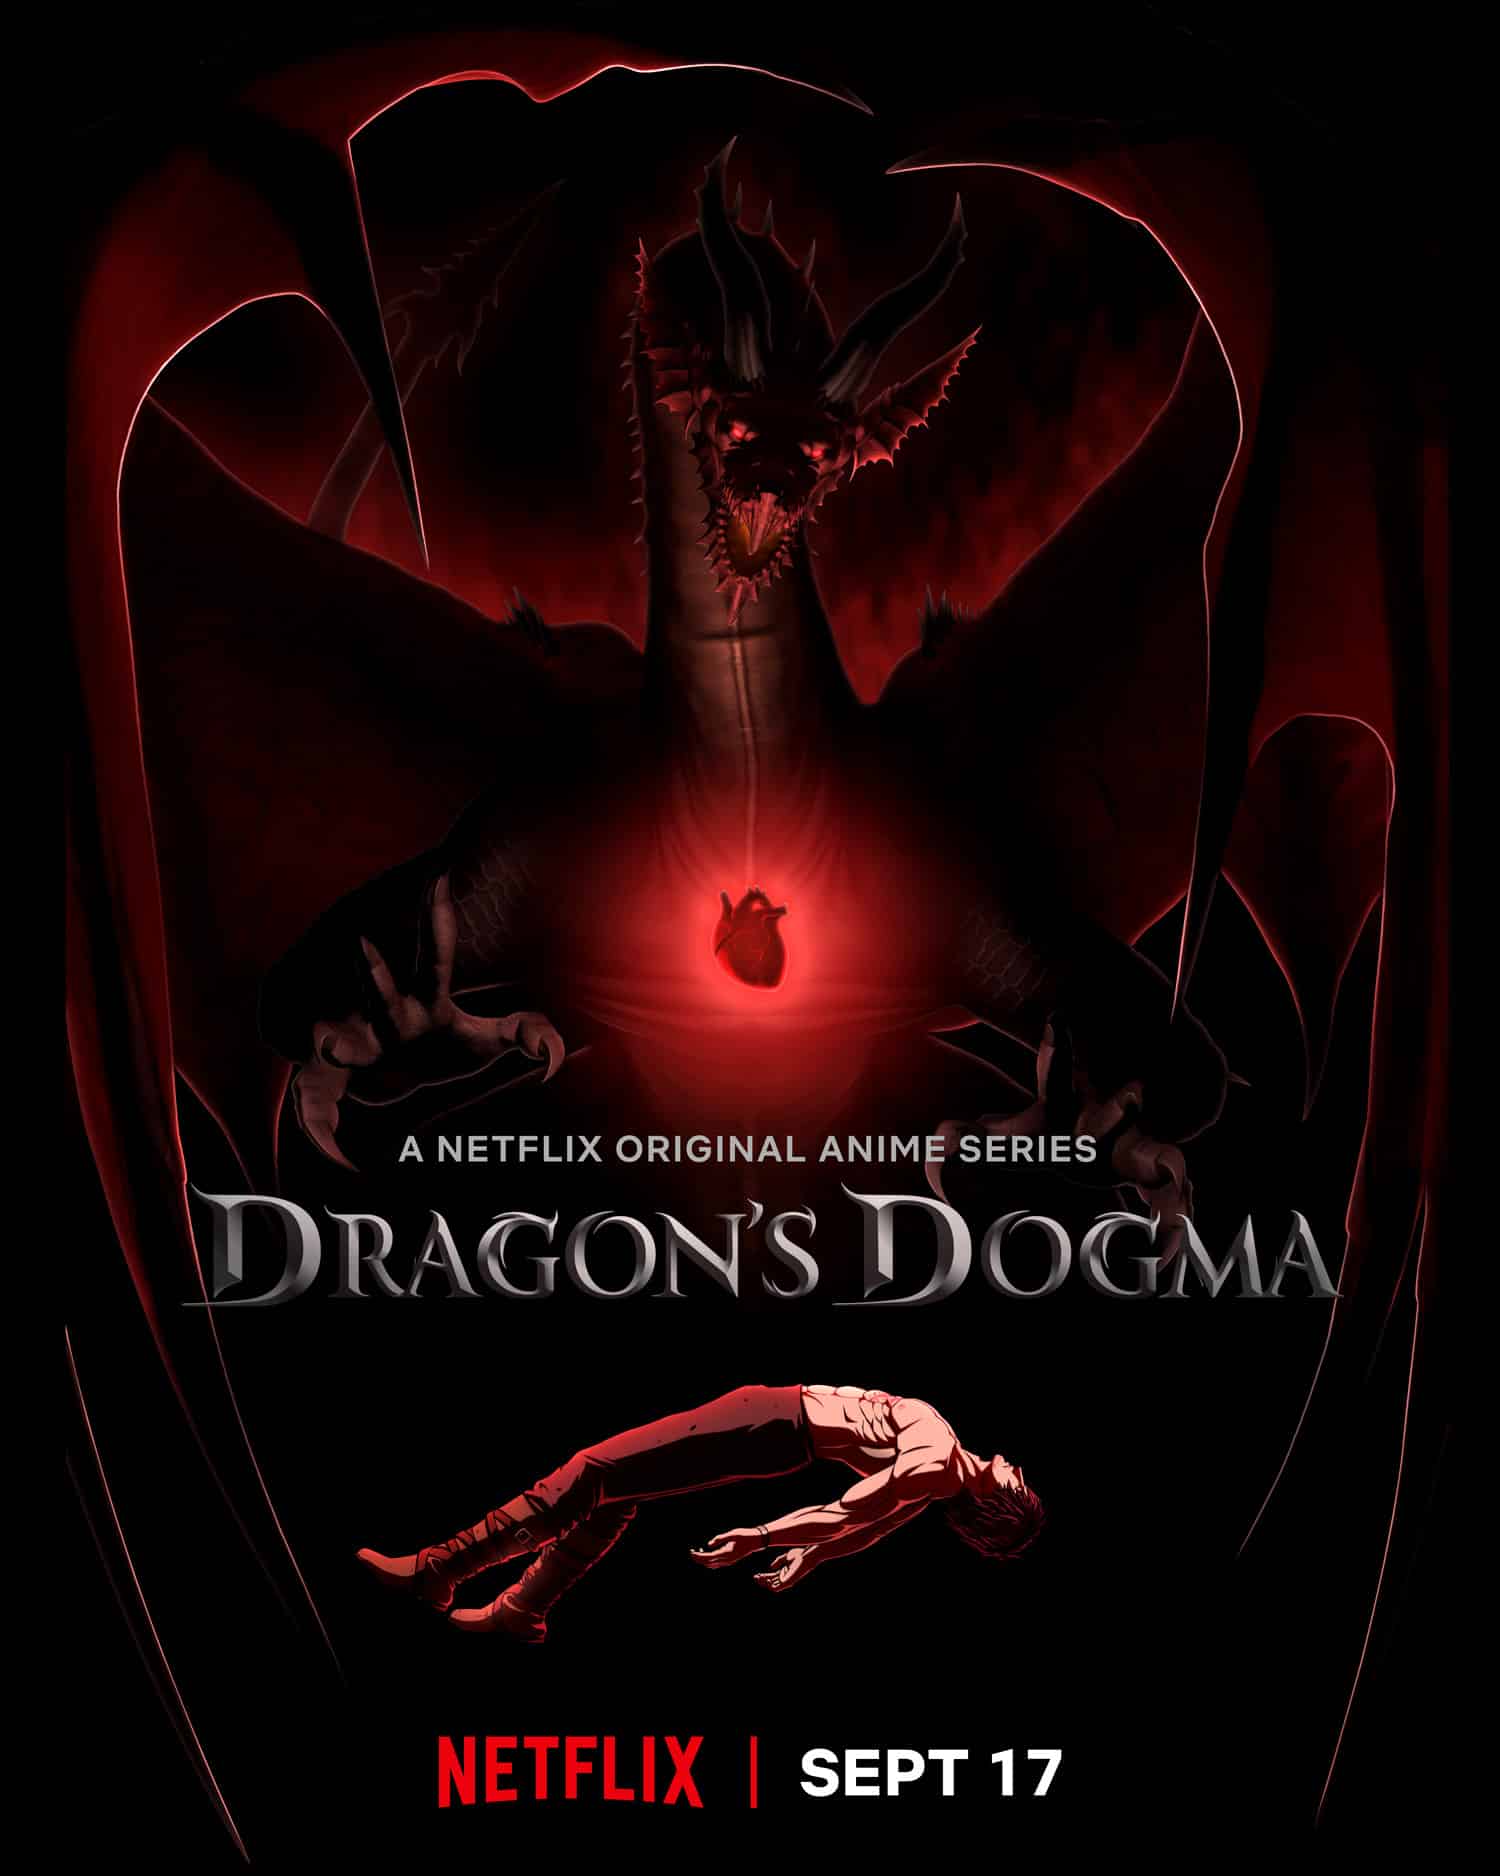 Annonce de la sortie de l'anime Dragon's Dogma sur Netflix